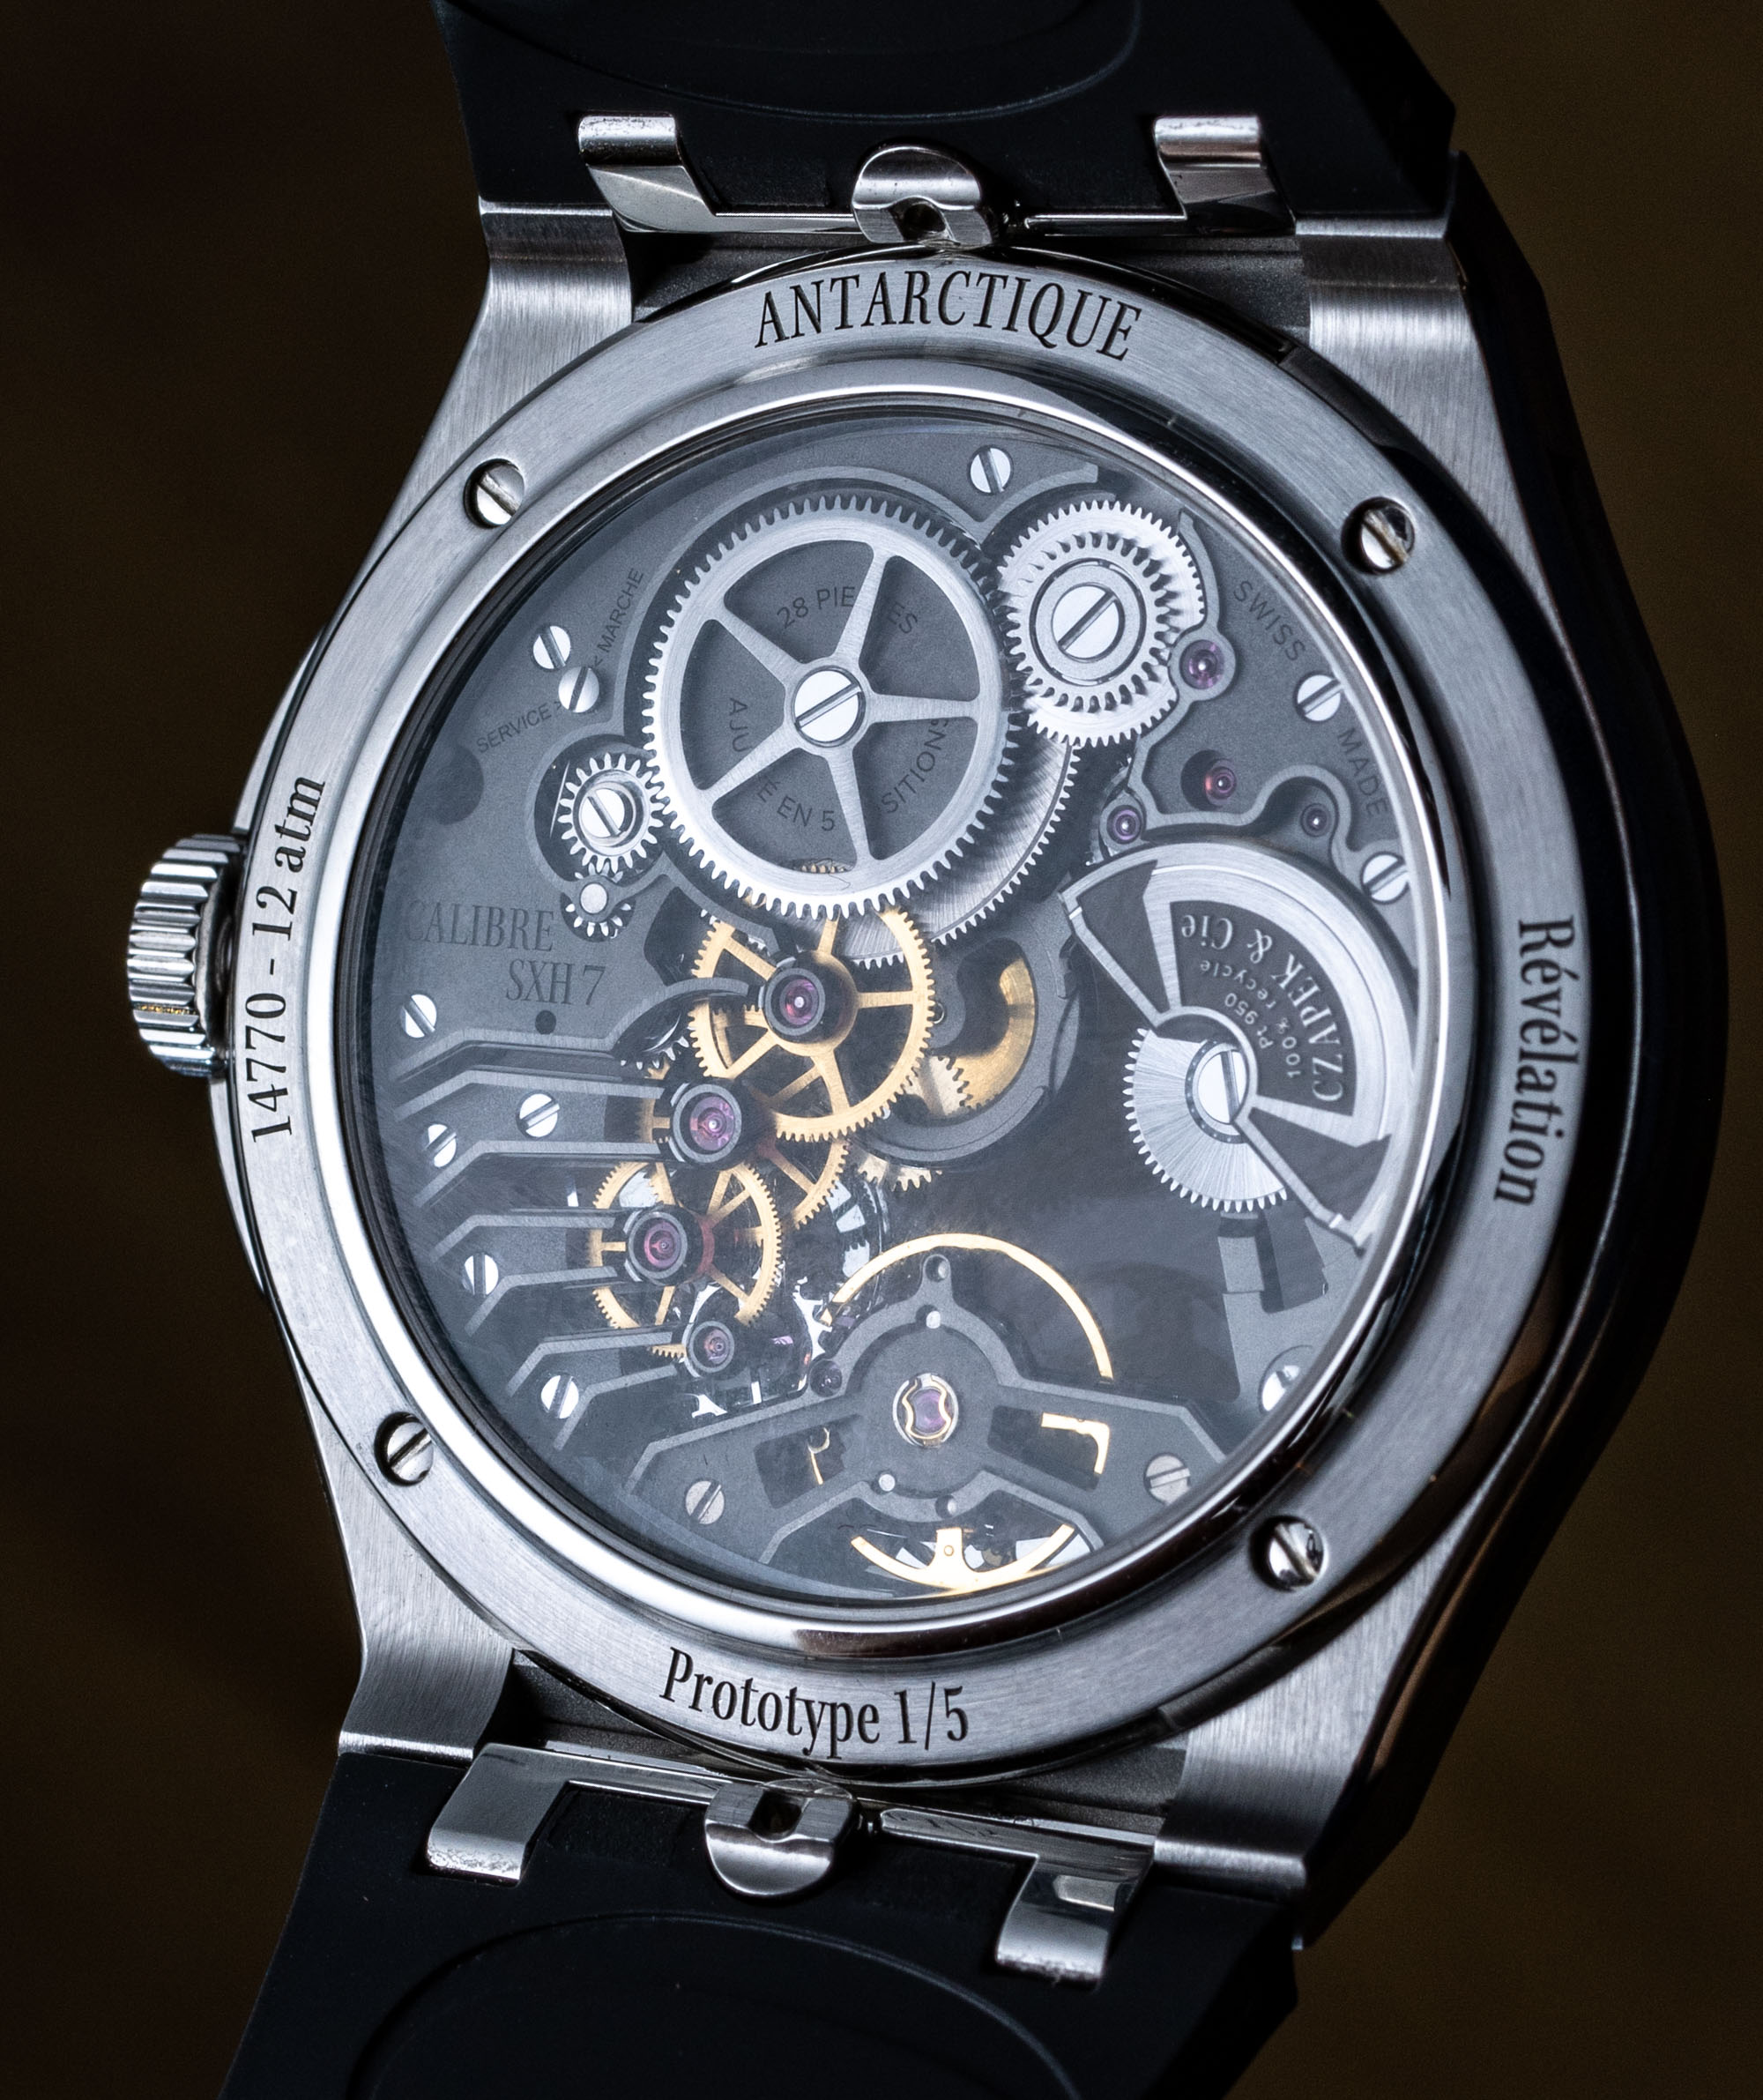 Собственноручно: часы Czapek Antarctique Revelation со скелетонизированным циферблатом